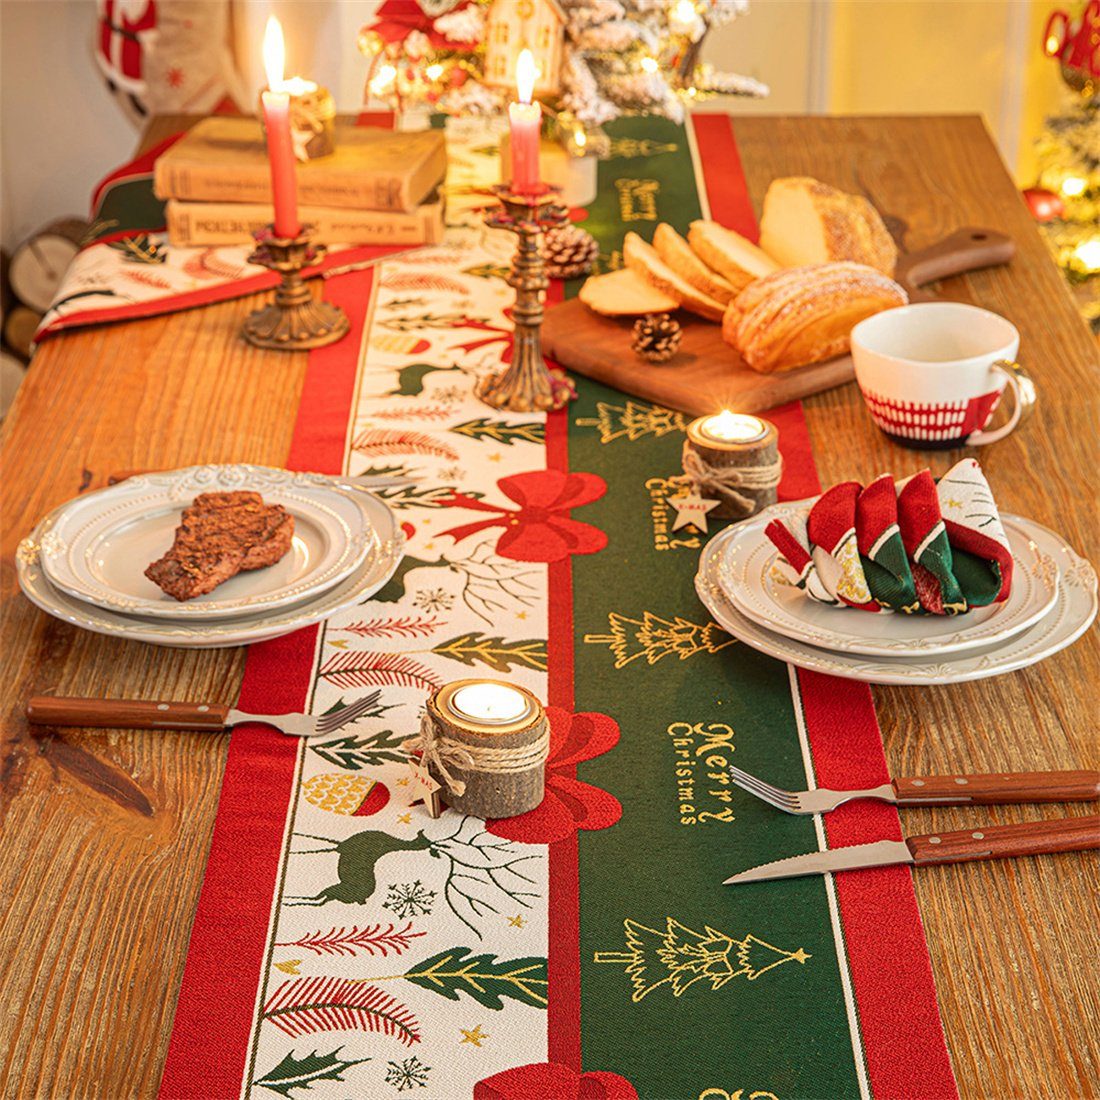 kreative DÖRÖY Rot Tischläufer Deko-Tischsets, festliche Deko-Tischfahnen Weihnachtliche